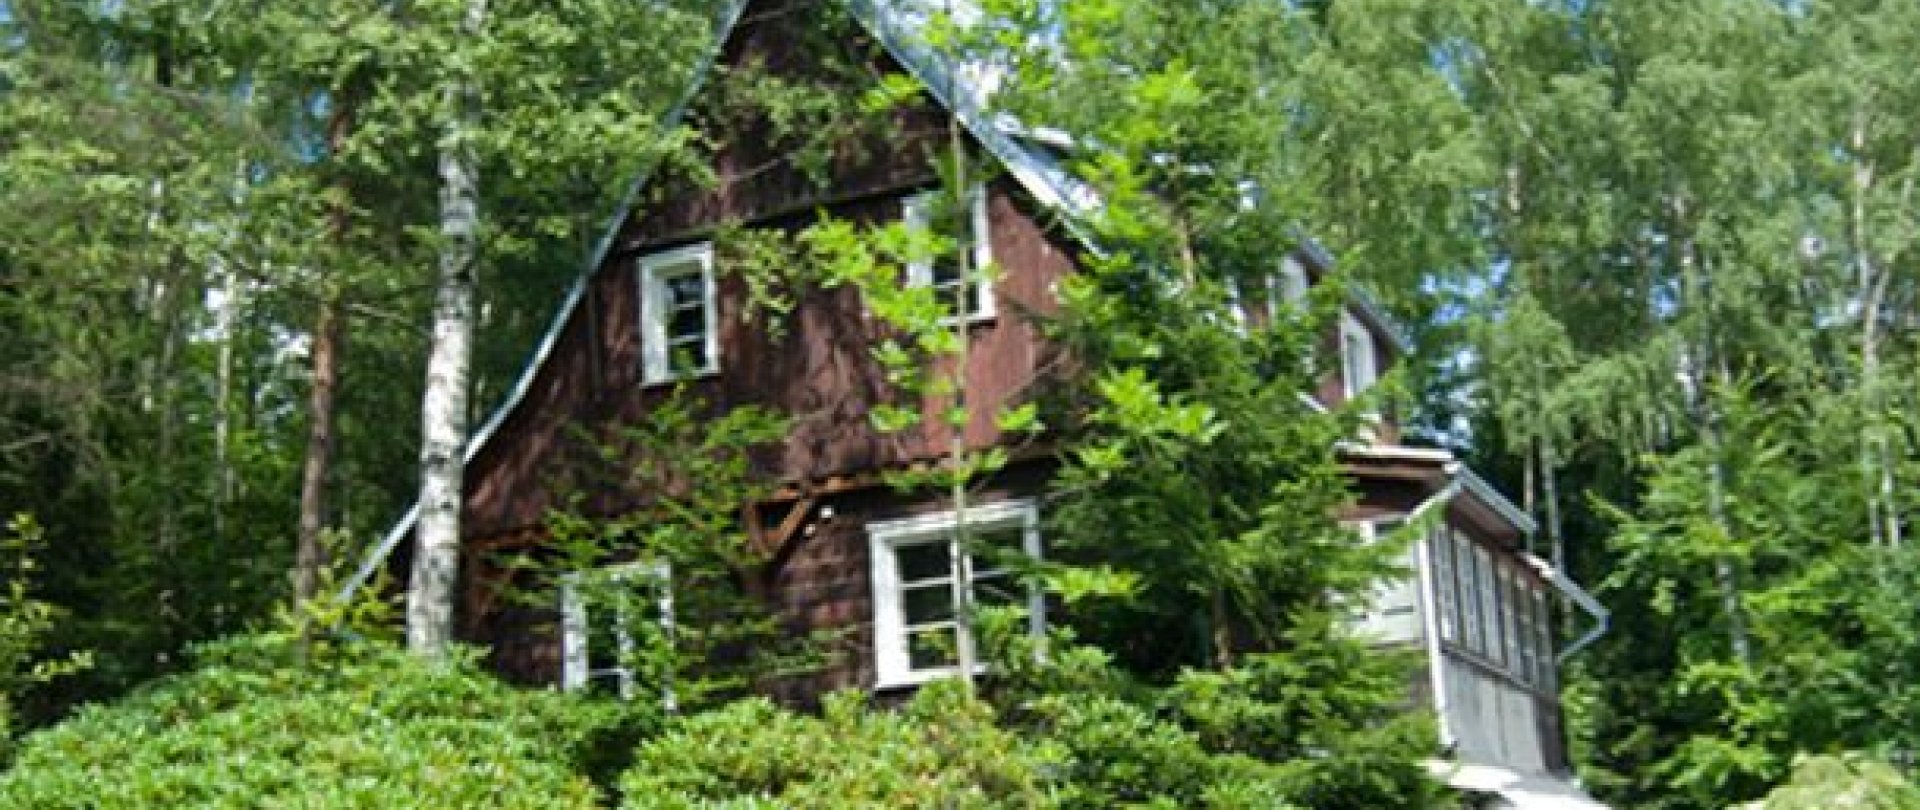 Malerhaus von Wlastimil Hofman